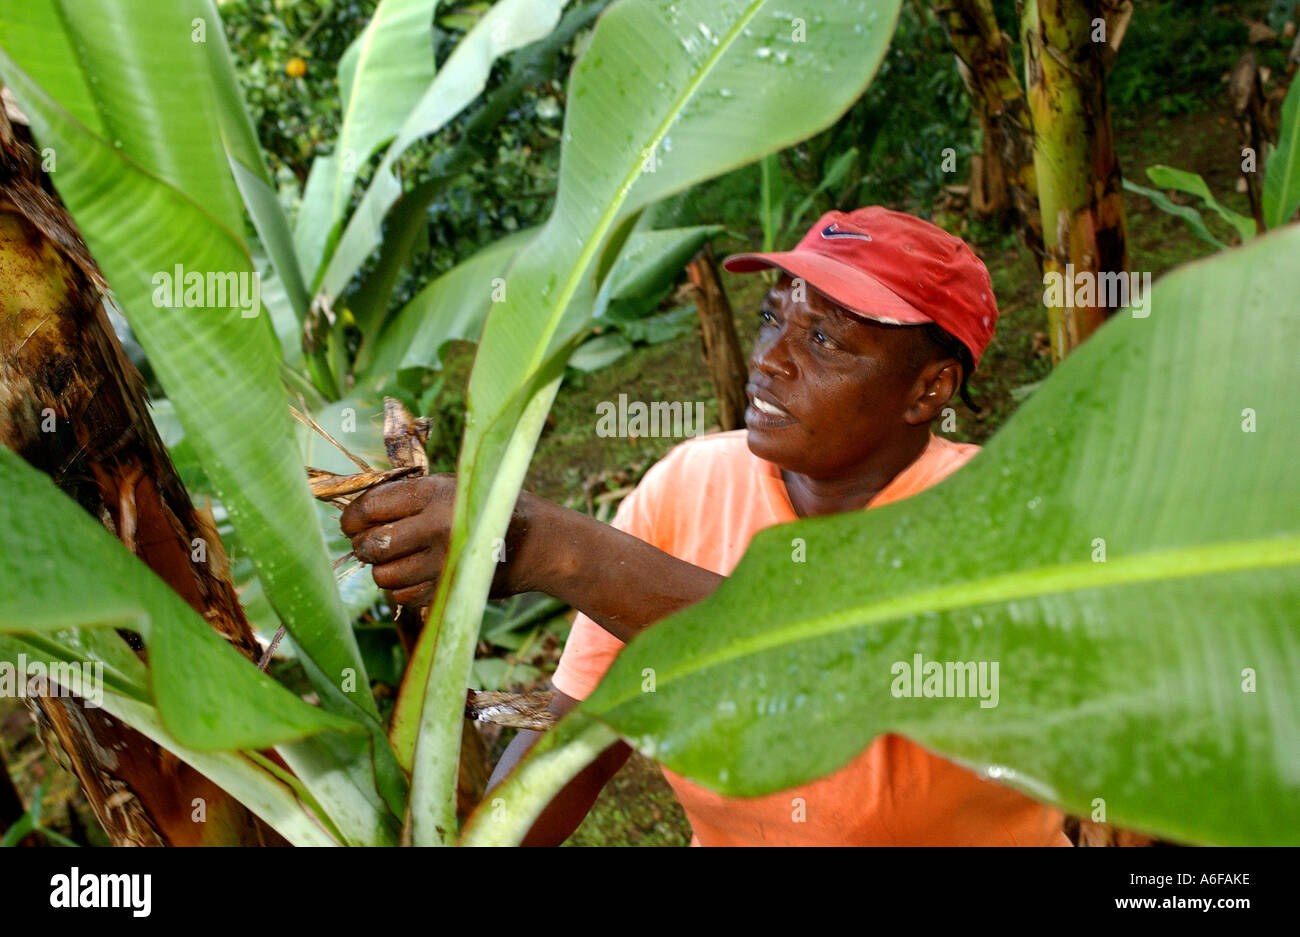 Fairtrade-Bauer Jocelyn Trumpet Streifen und reiht sich den "Papierkorb". Dies ist eine natürliche Methode, um das Wachstum von Unkraut zu verhindern Stockfoto